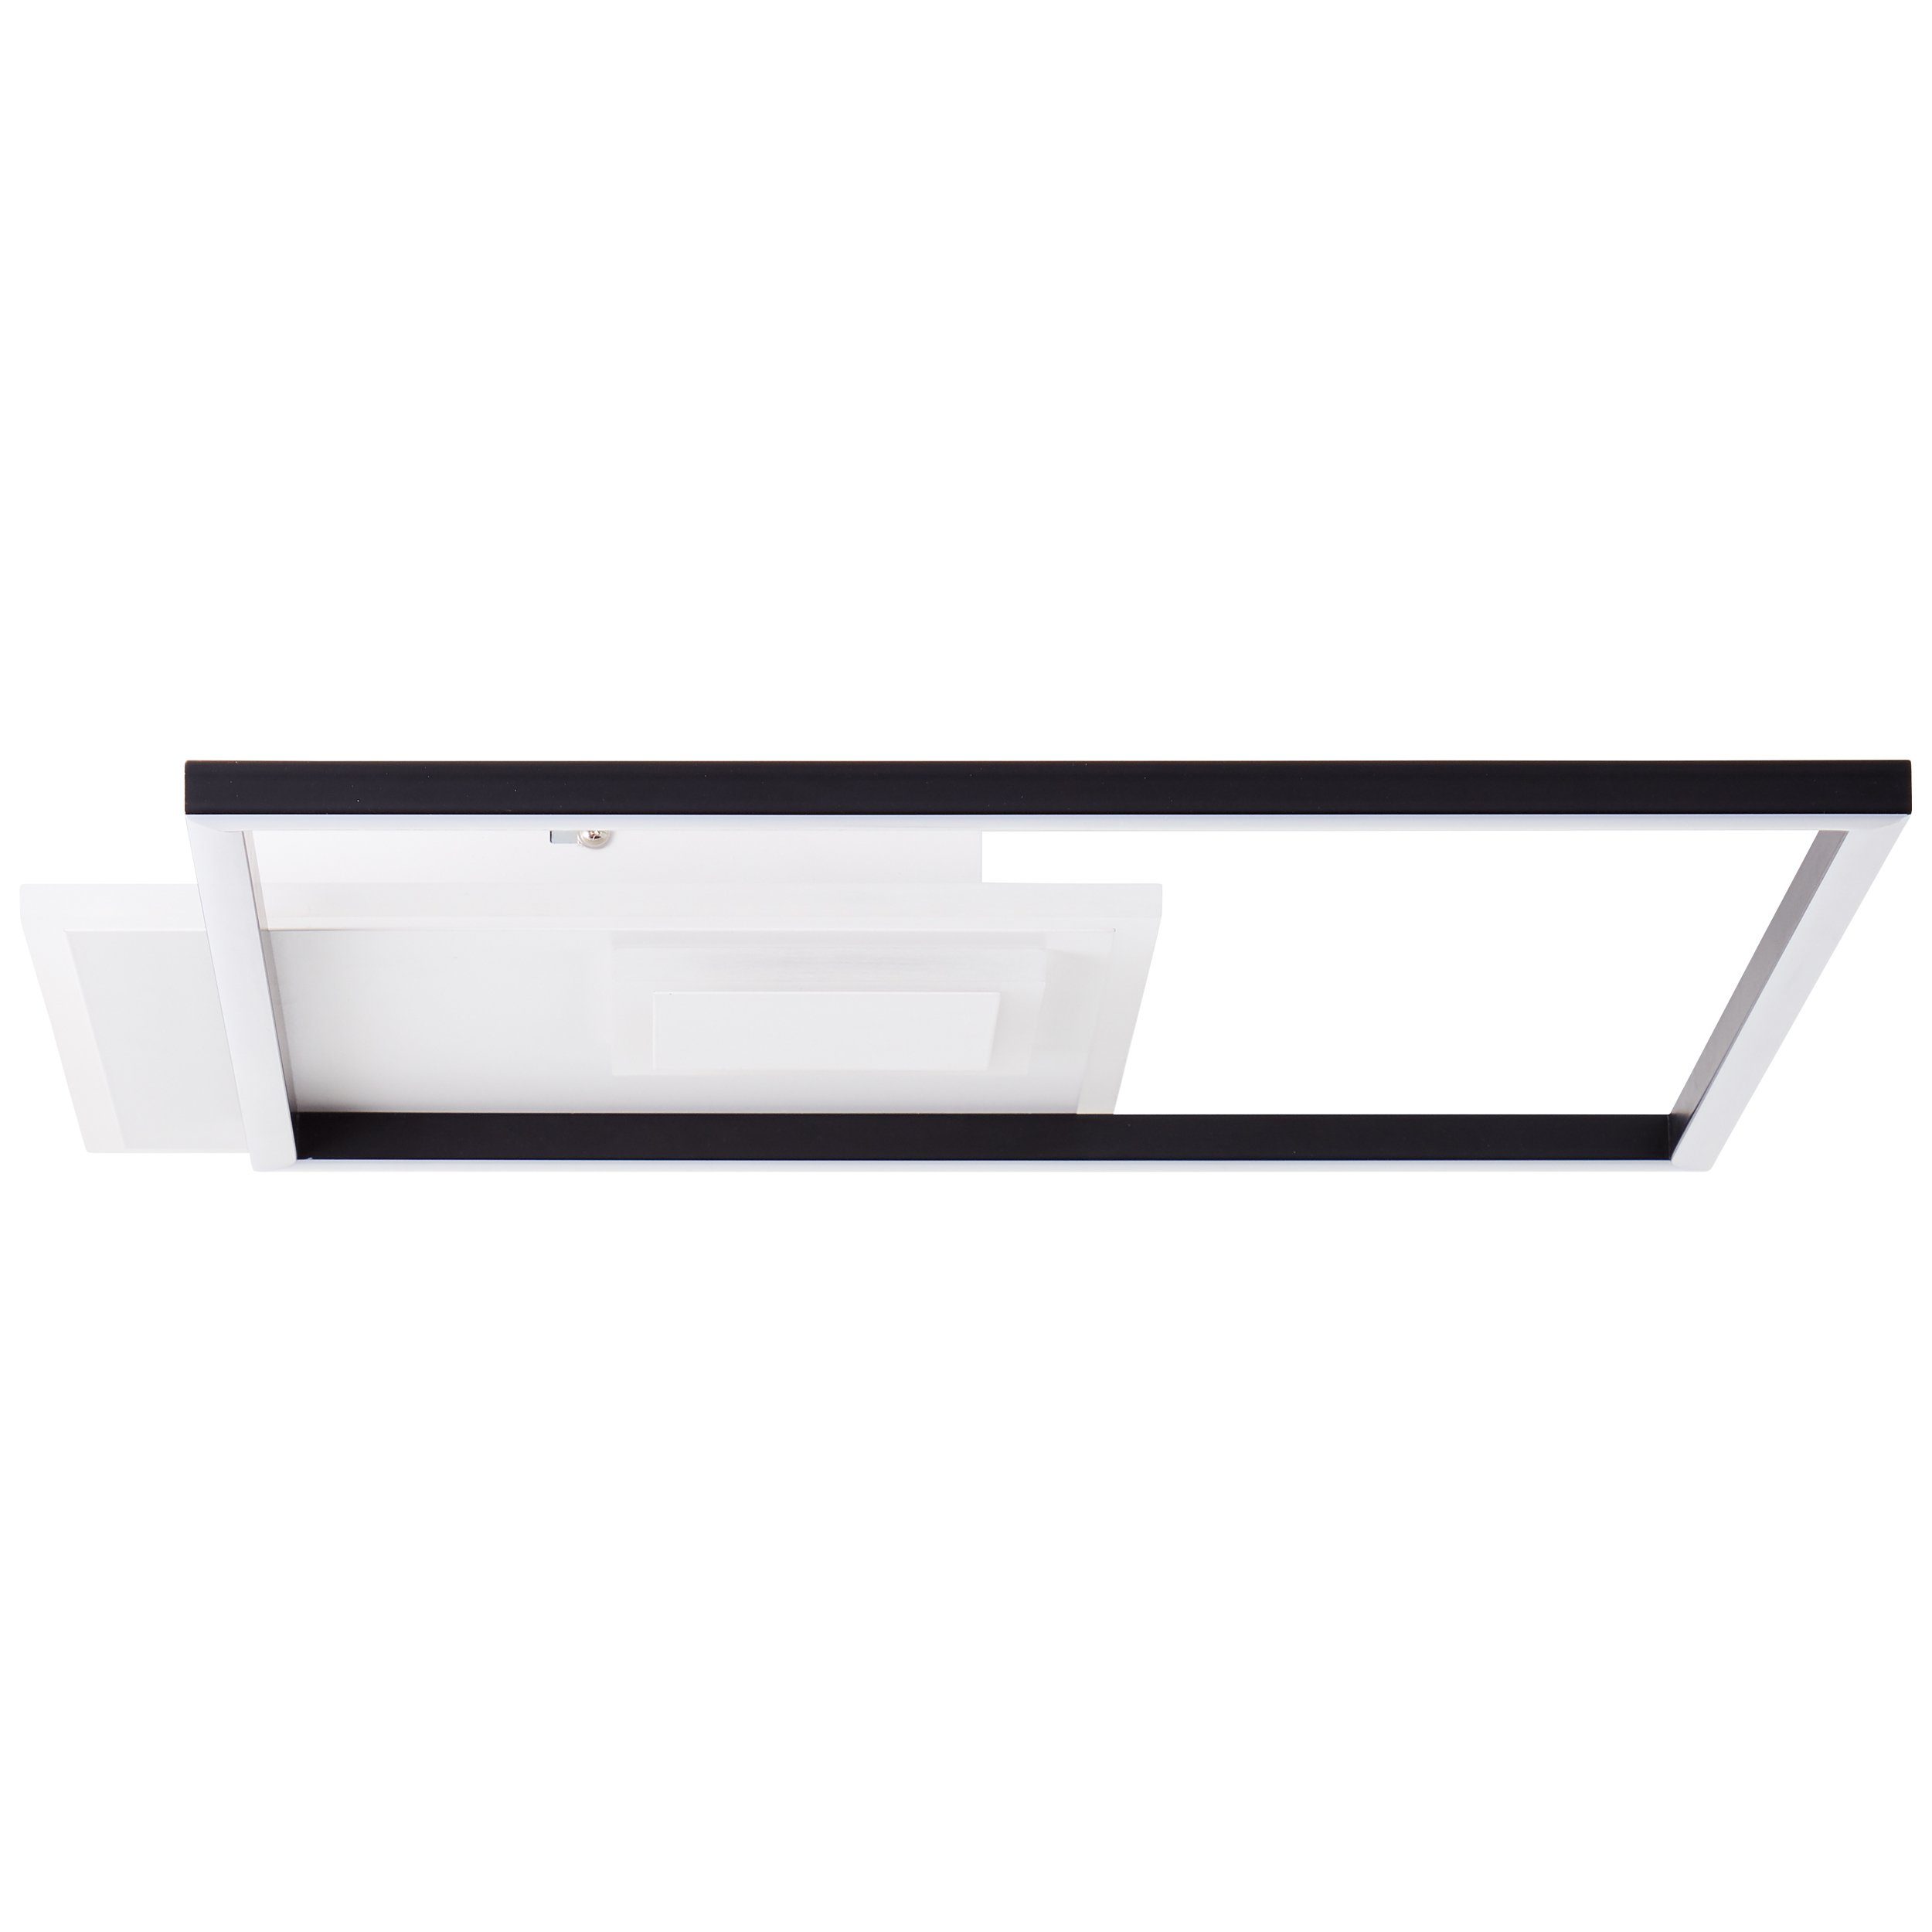 Brilliant Aufbauleuchte Iorgo, Iorgo LED Metall/Kunststoff schwarz/weiß, 44x44cm Deckenaufbau-Paneel